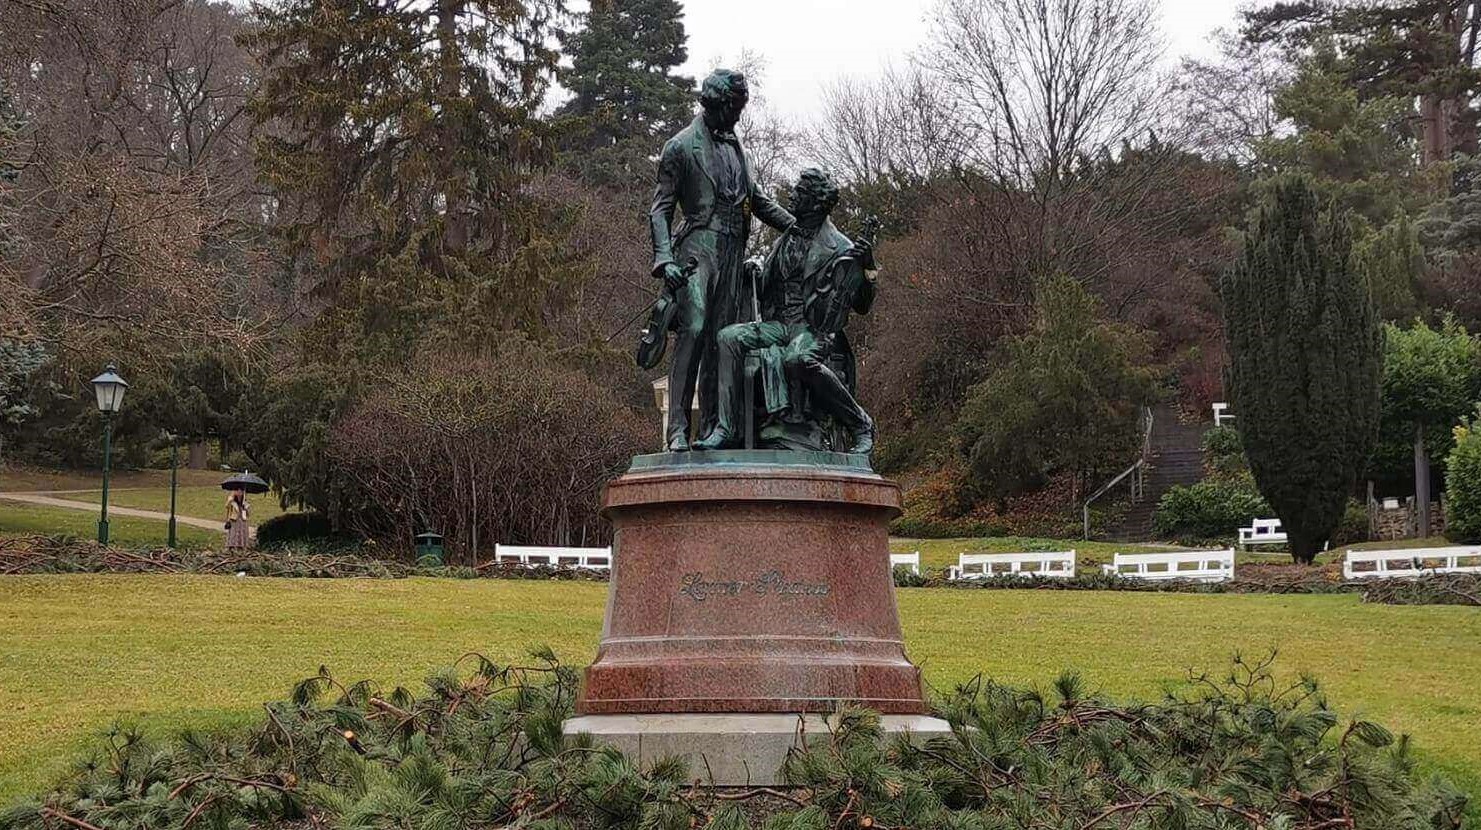 Zwei oxidierte Bronzestatuen von Joseph Lanner und Johann Strauß auf einem runden Fundament umringt von Ästen von Nadelbäumen, während im Hintergrund eine weite Wiese und Bäume zu sehen sind.